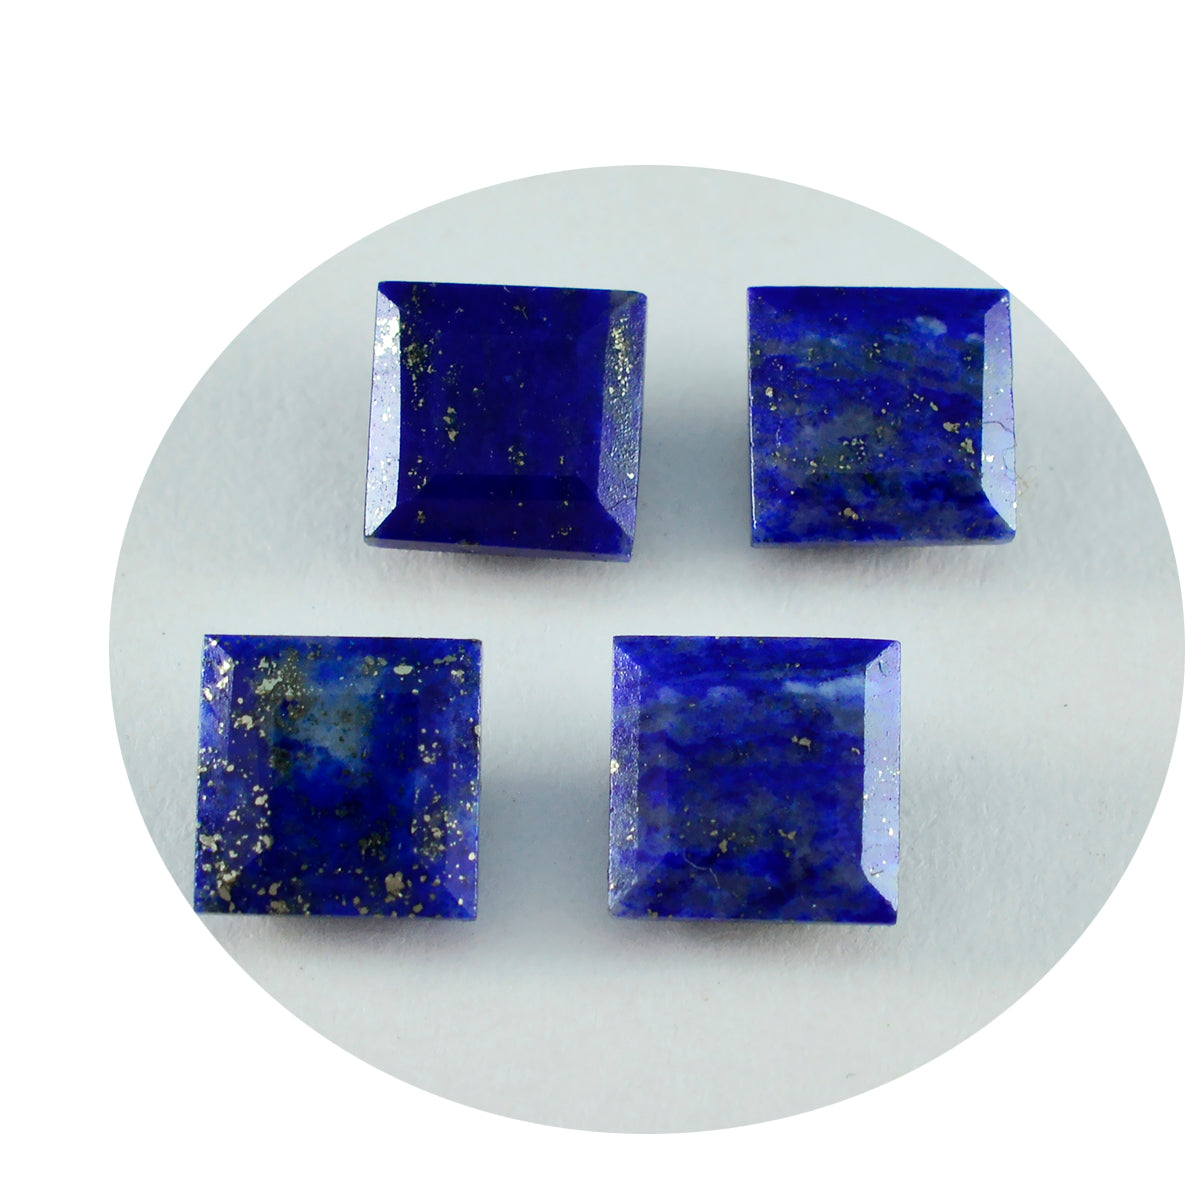 Riyogems 1 Stück echter blauer Lapislazuli, facettiert, 9 x 9 mm, quadratische Form, Edelstein von erstaunlicher Qualität